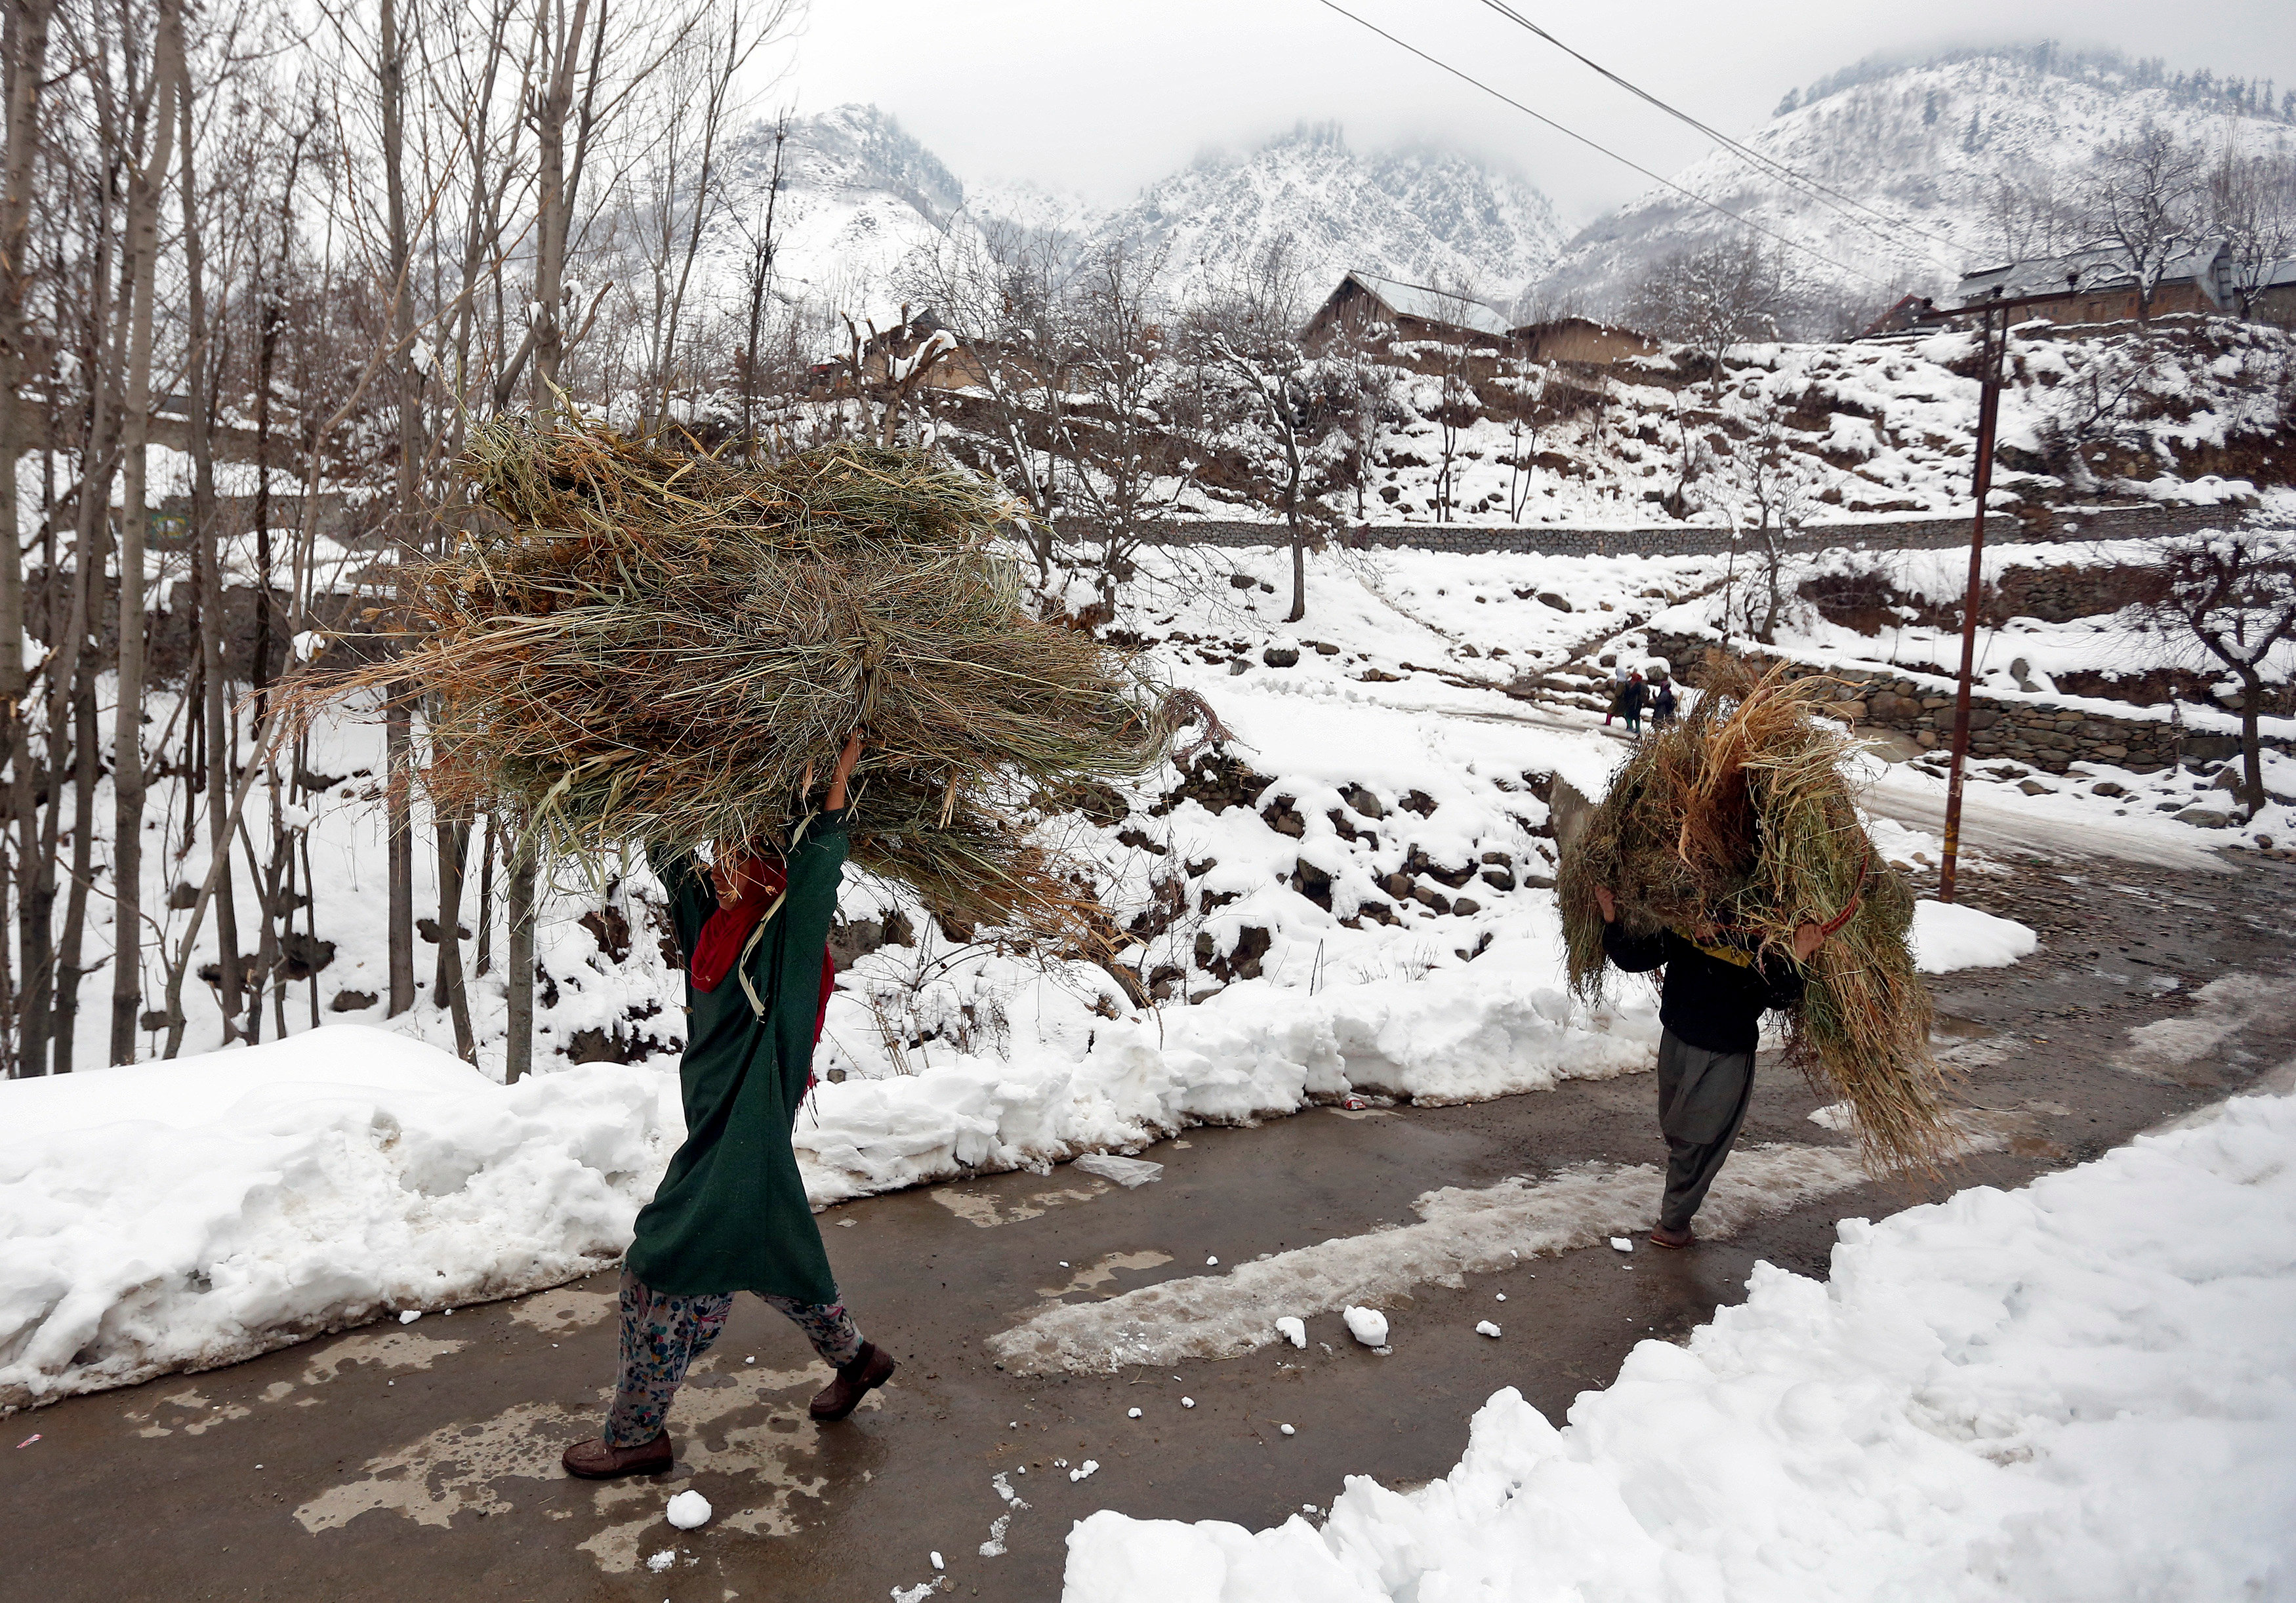 سيدة تحمل عشب وسط طرقات مغطاة بالثلج فى الهند